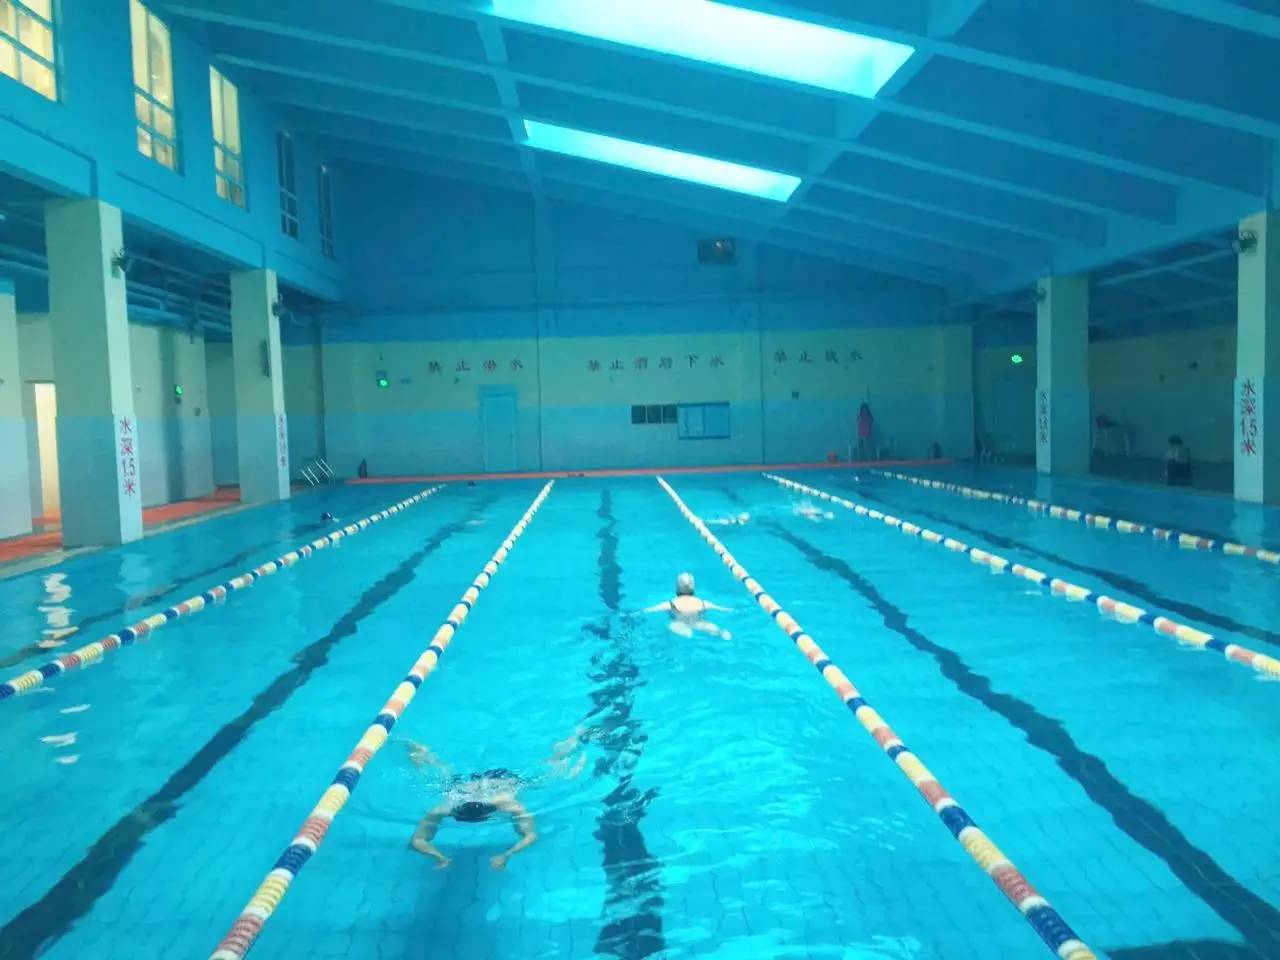 金街店游泳培训纳丹堡室外泳池9,锻炼意志,磨练毅力8,经常游泳有助于